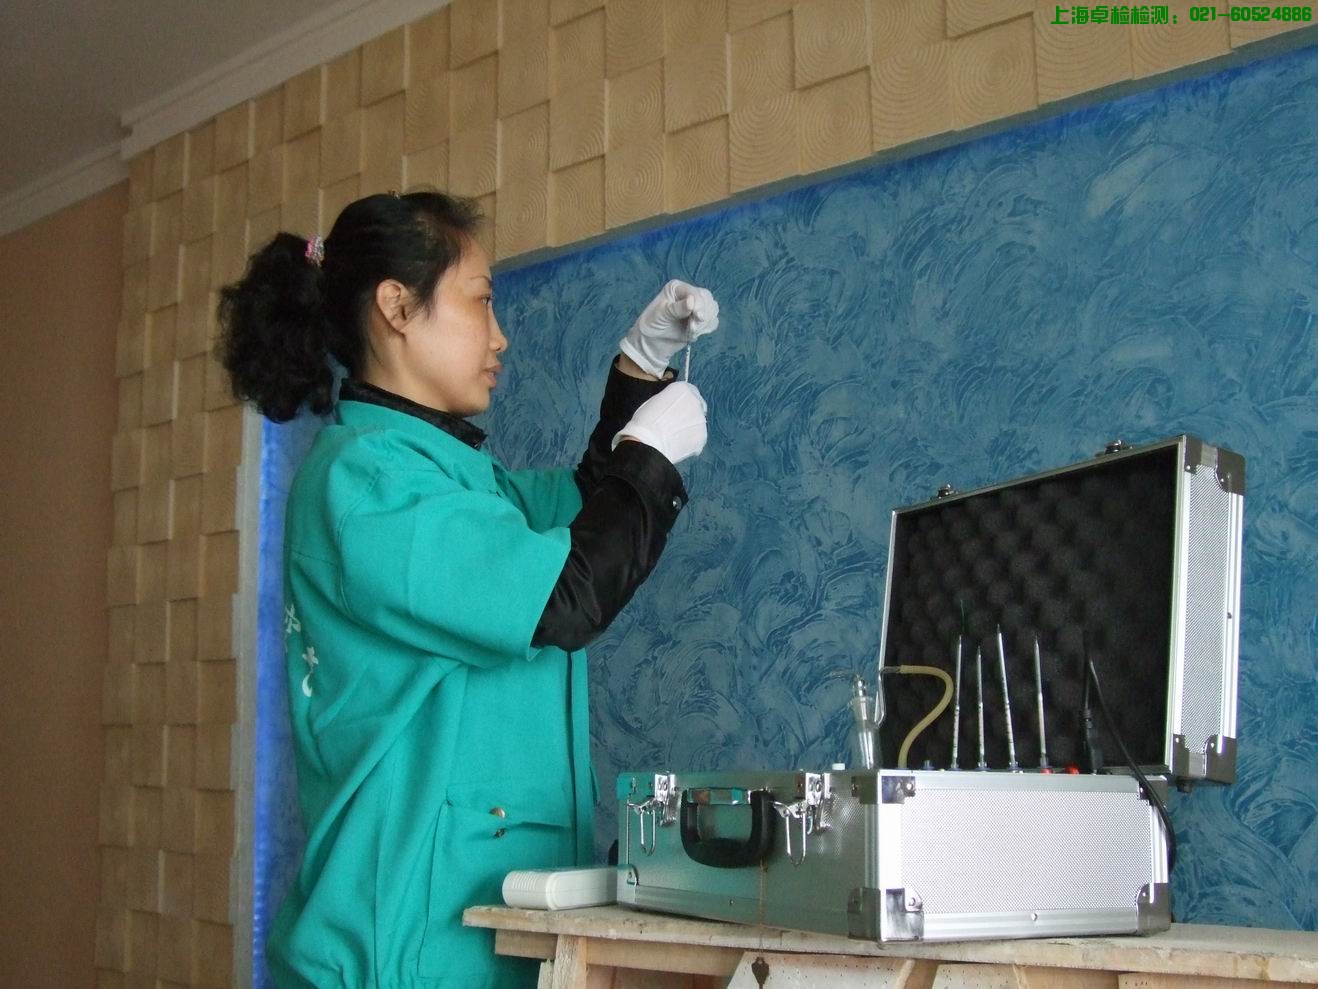 上海檢測技術有限公司-上海室內空氣檢測和甲醛檢測,檢測熱線：13816130886